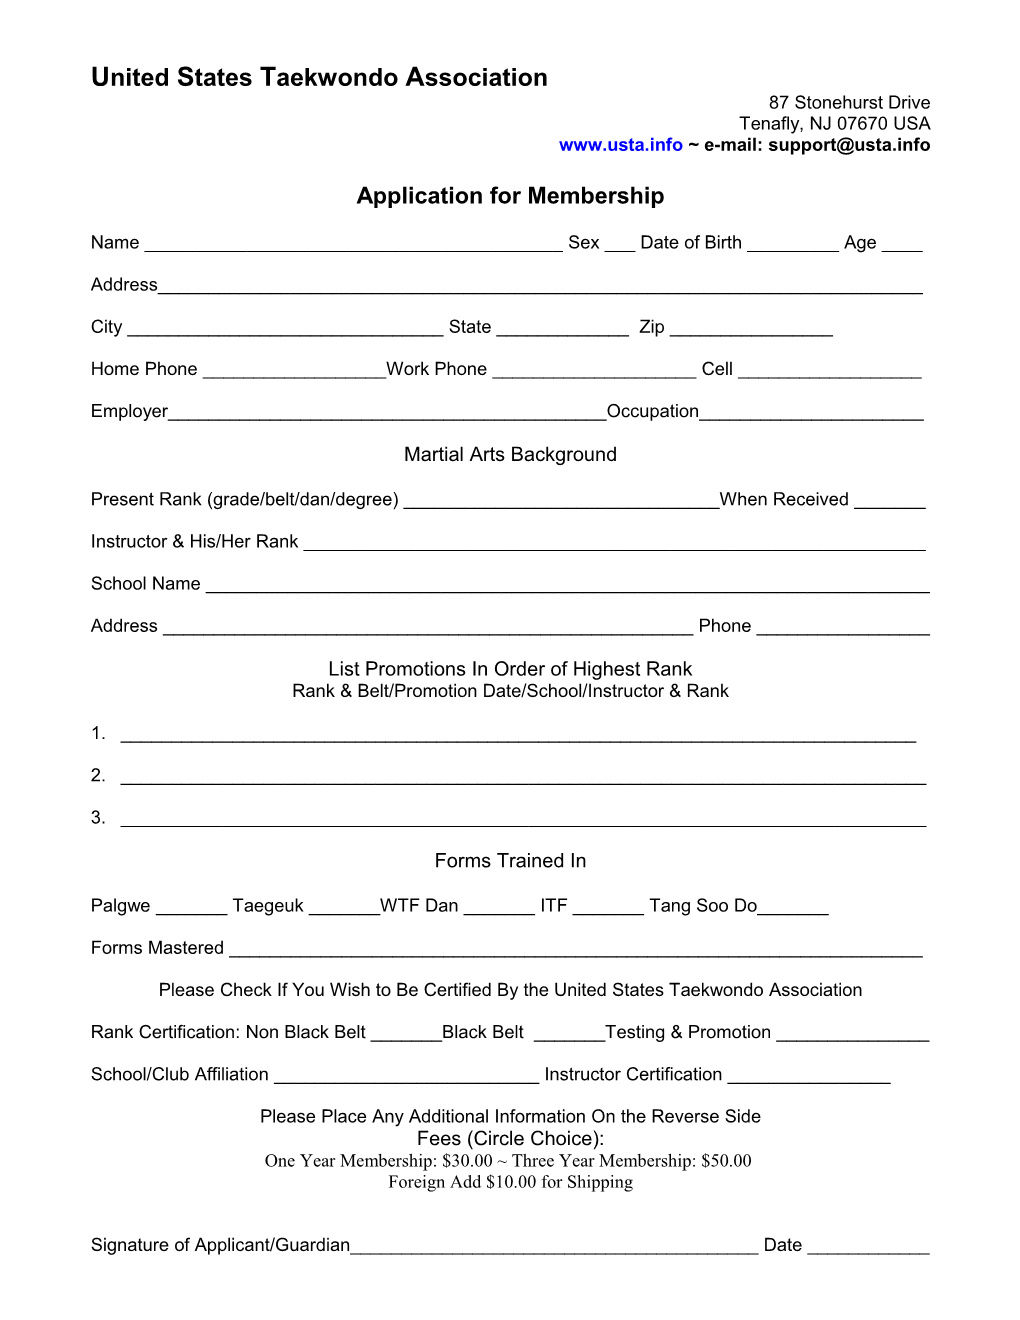 Application for General Membership